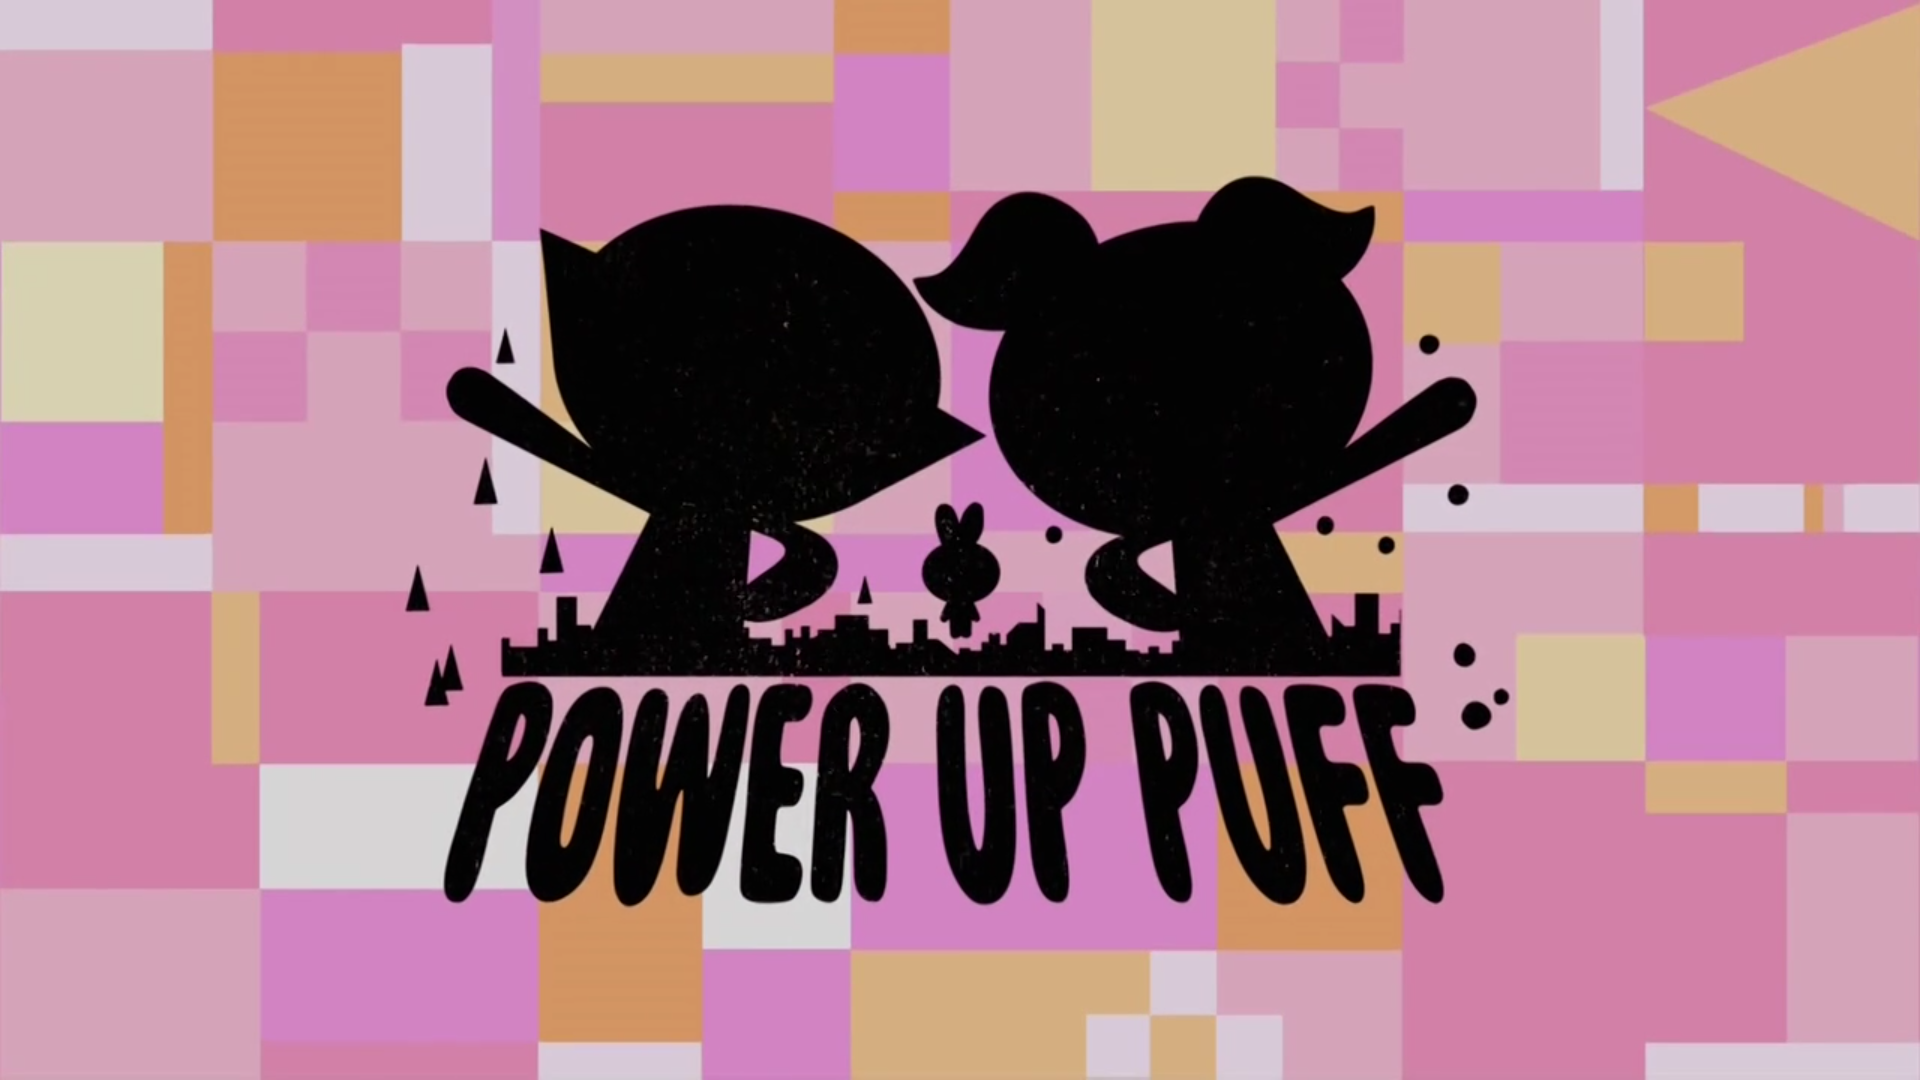 Перезапуск Супер крошки / The Powerpuff Girls сезон первый